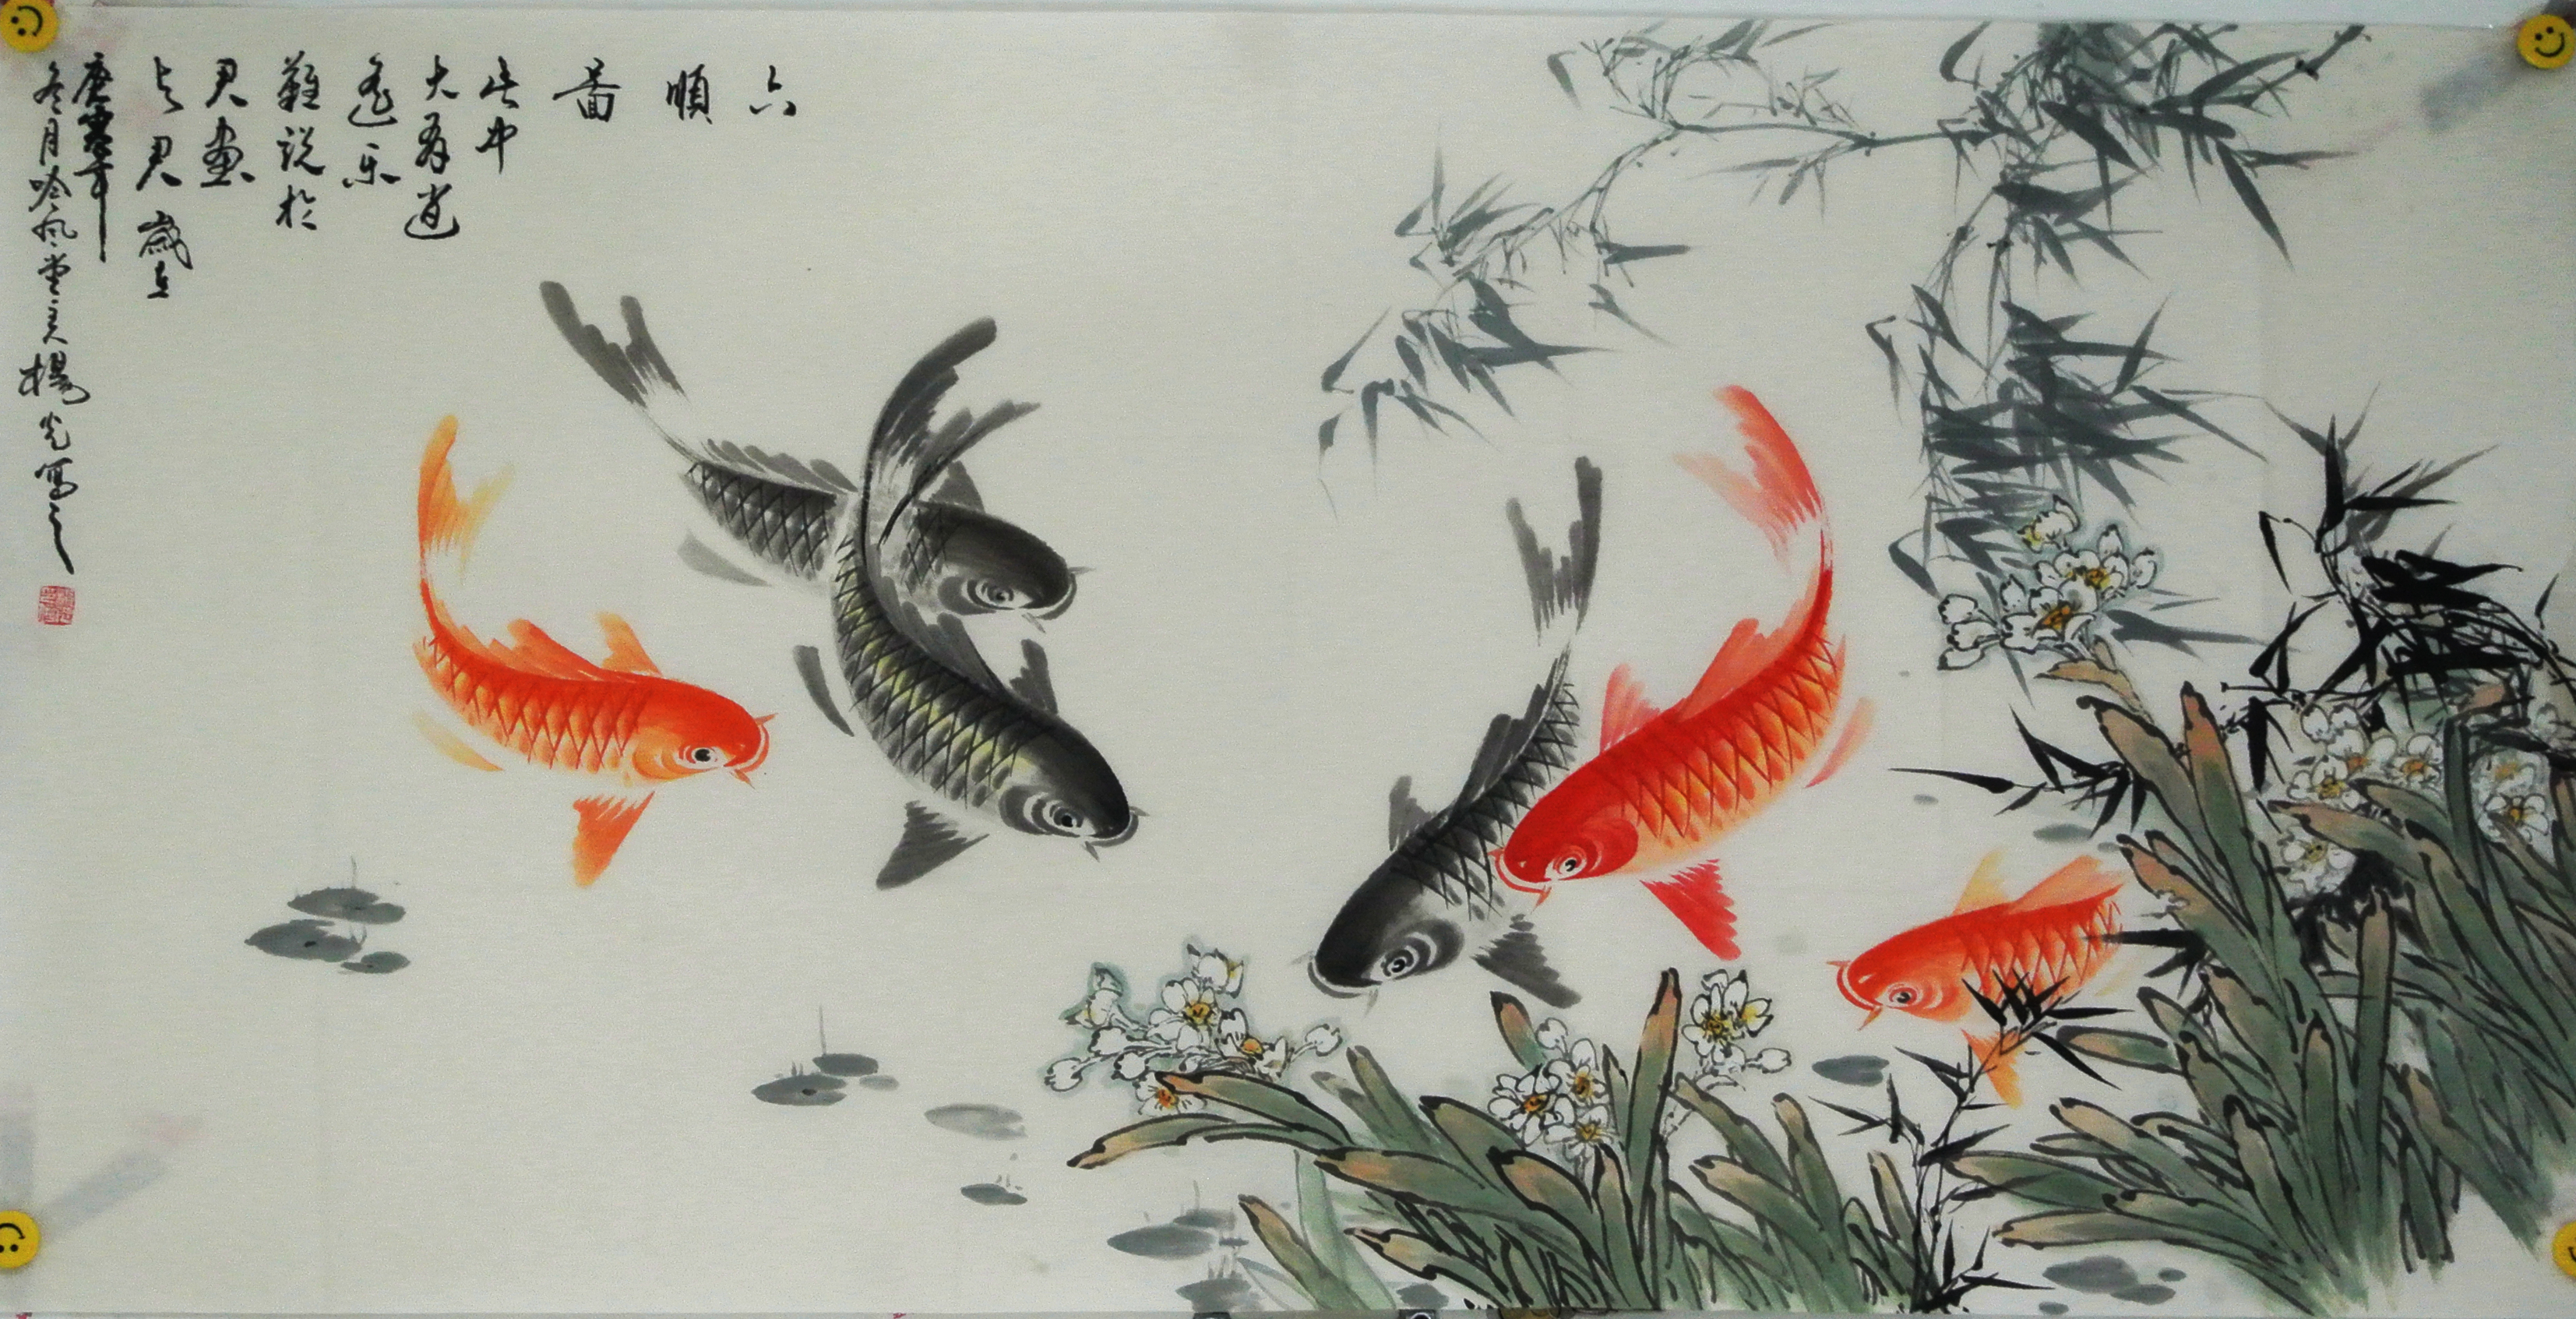 国画九鱼图系列作品欣赏  画面中又红色鲤鱼,因红色的,金色的鲤鱼象征